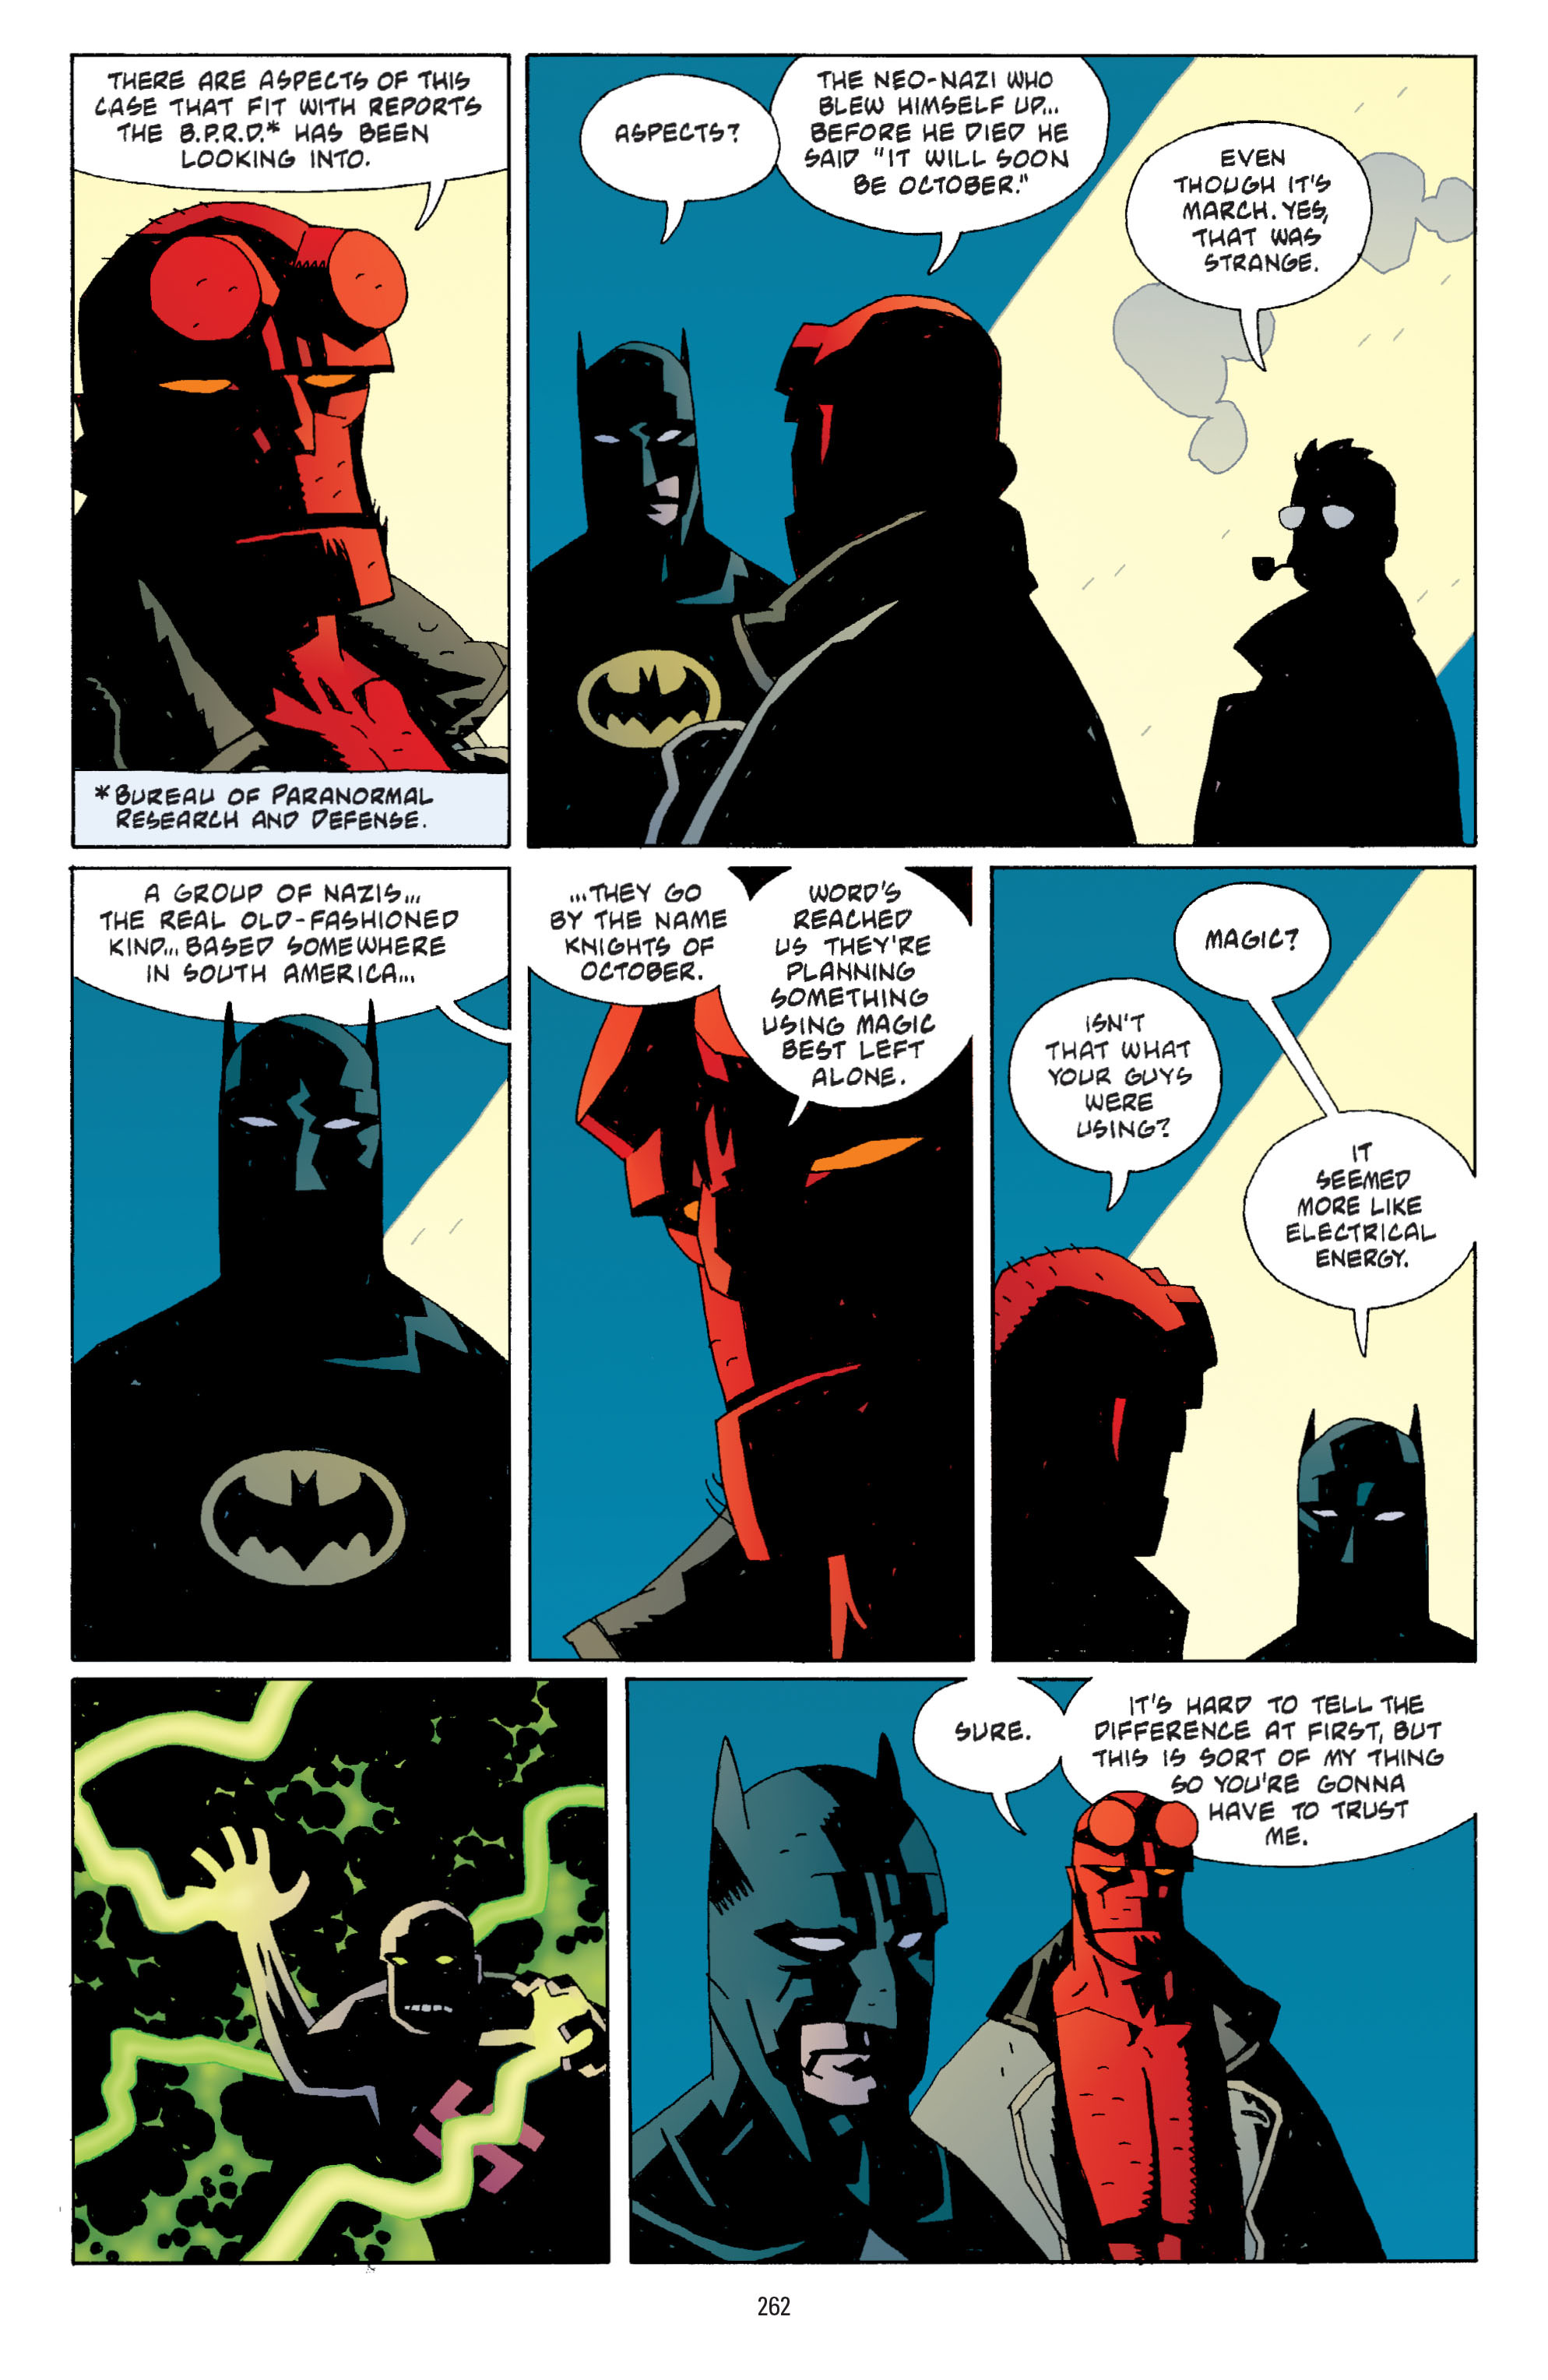 DC Comics/Dark Horse Comics: Justice League Full #1 - English 253